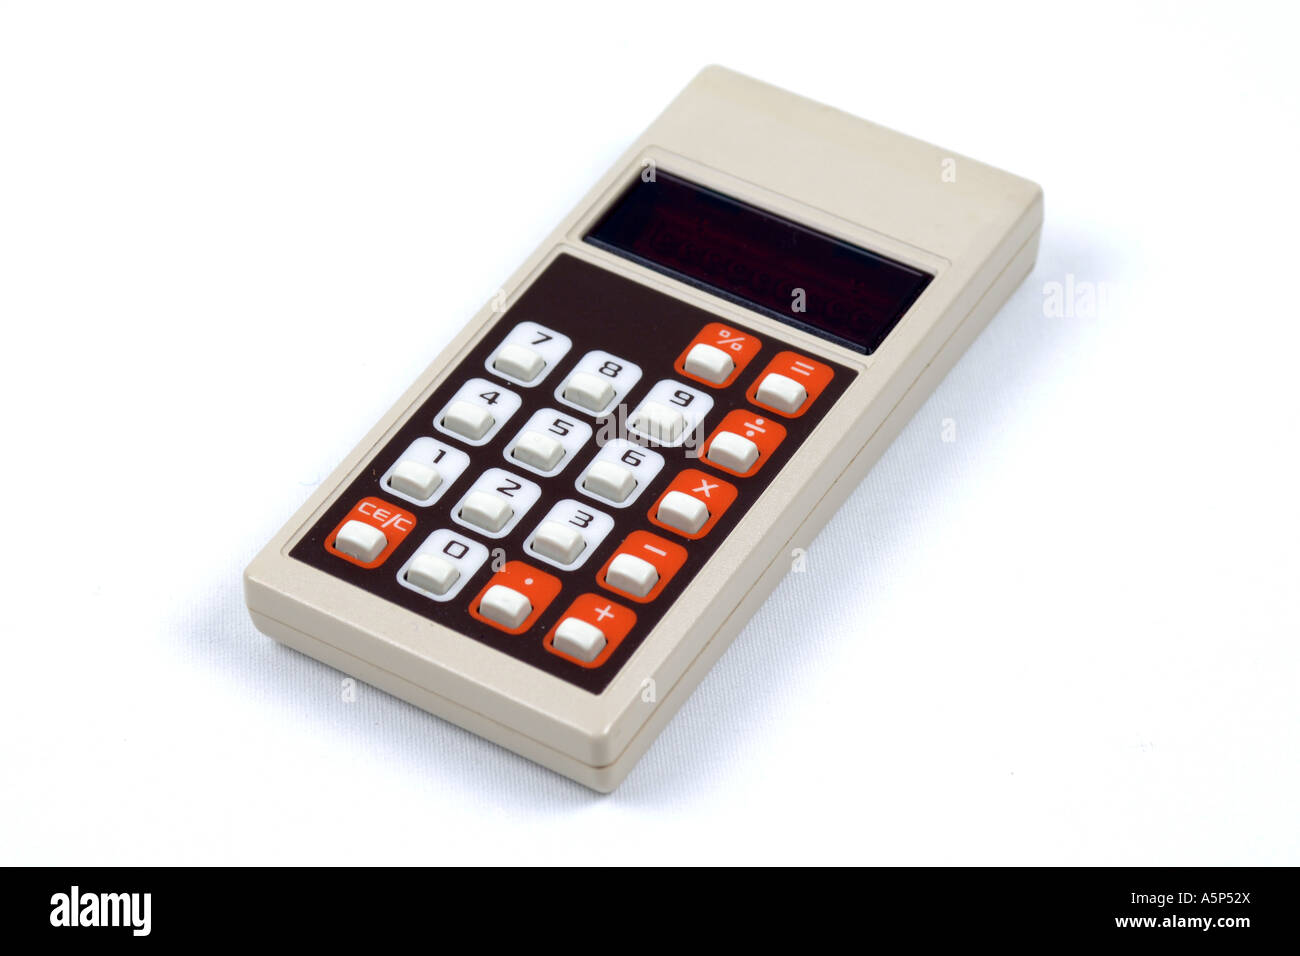 Old LED Pocket calculator Stock Photo - Alamy